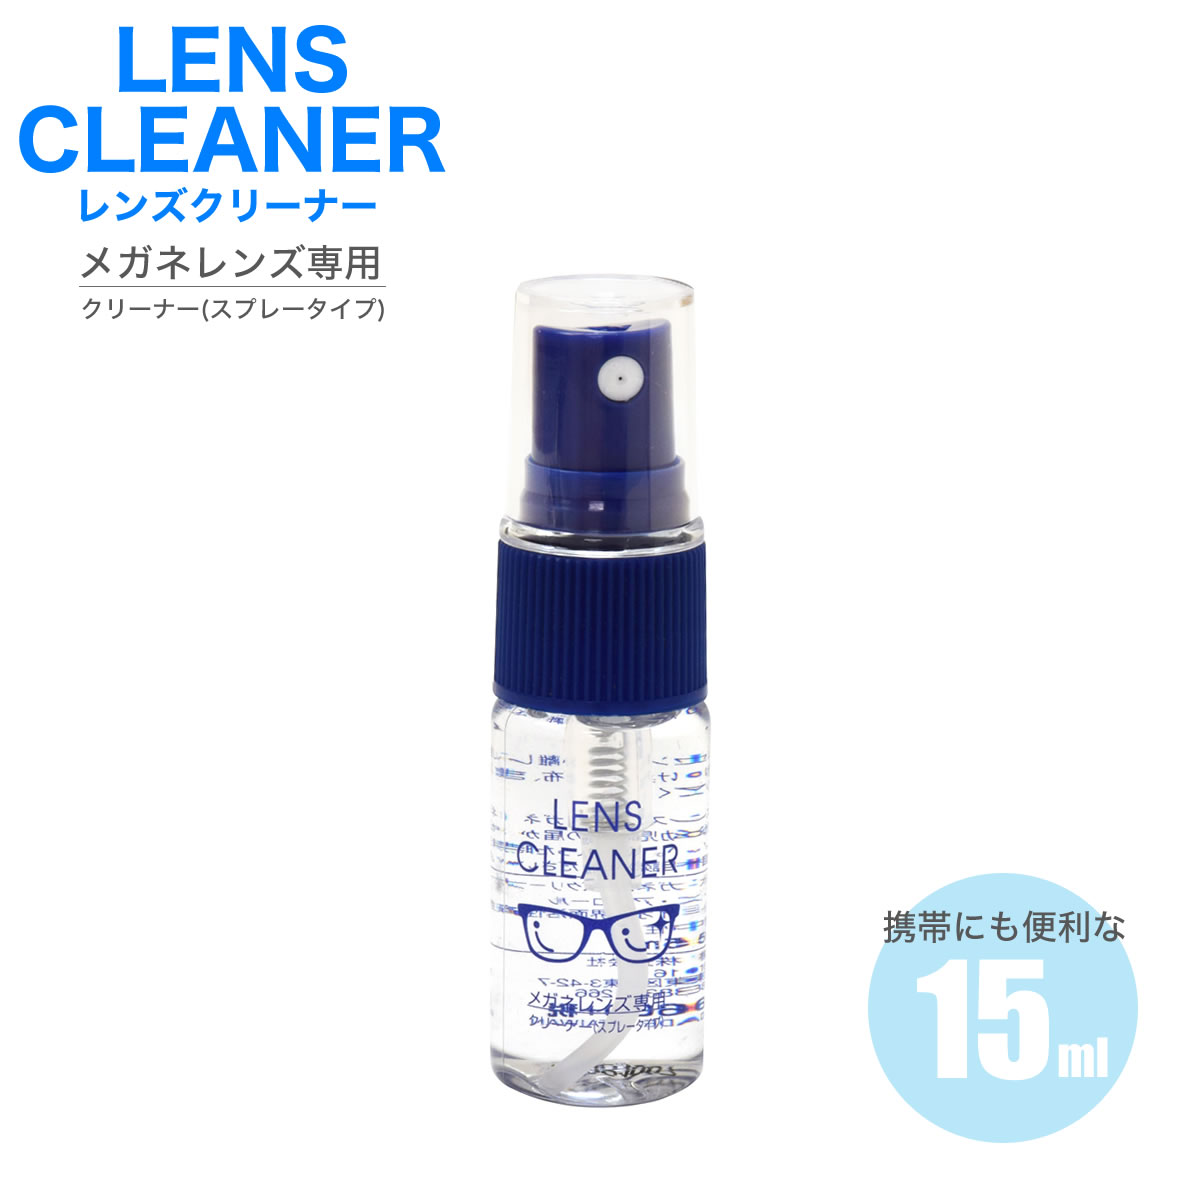 【メール便：3個まで】 レンズクリーナー メガネ 眼鏡 お手入れ スプレー 携帯 コンパクト 簡単 便利 メンズ レディース [ACC]